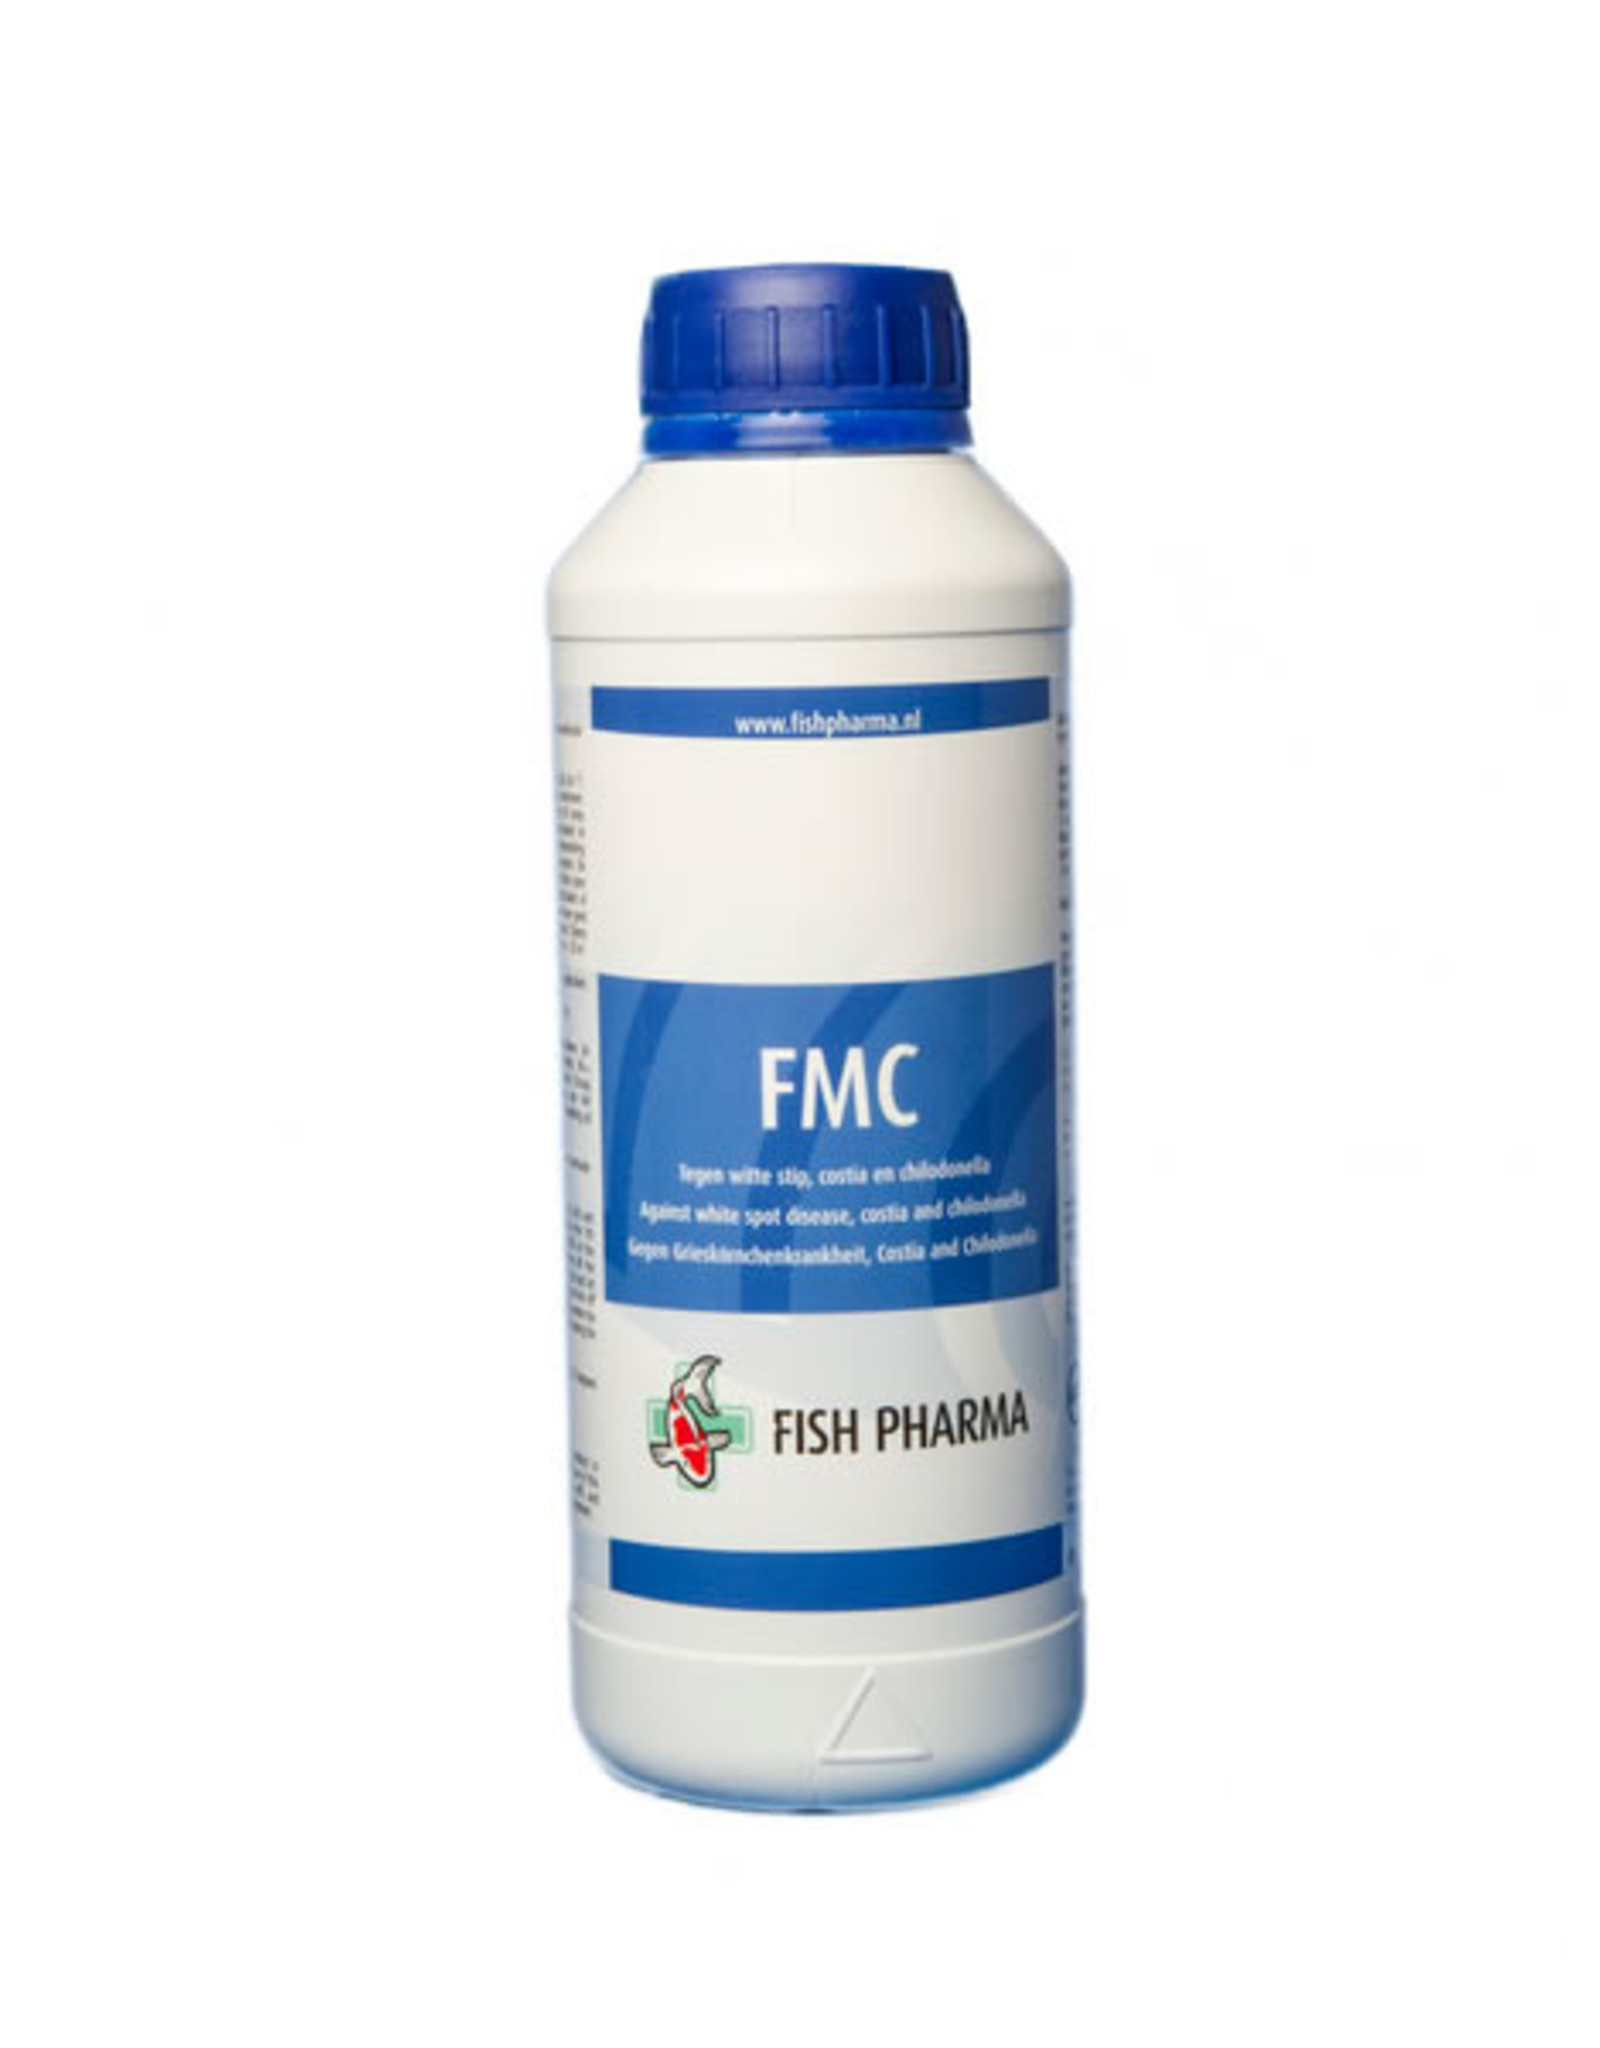 Fish Pharma Fish Pharma FMC